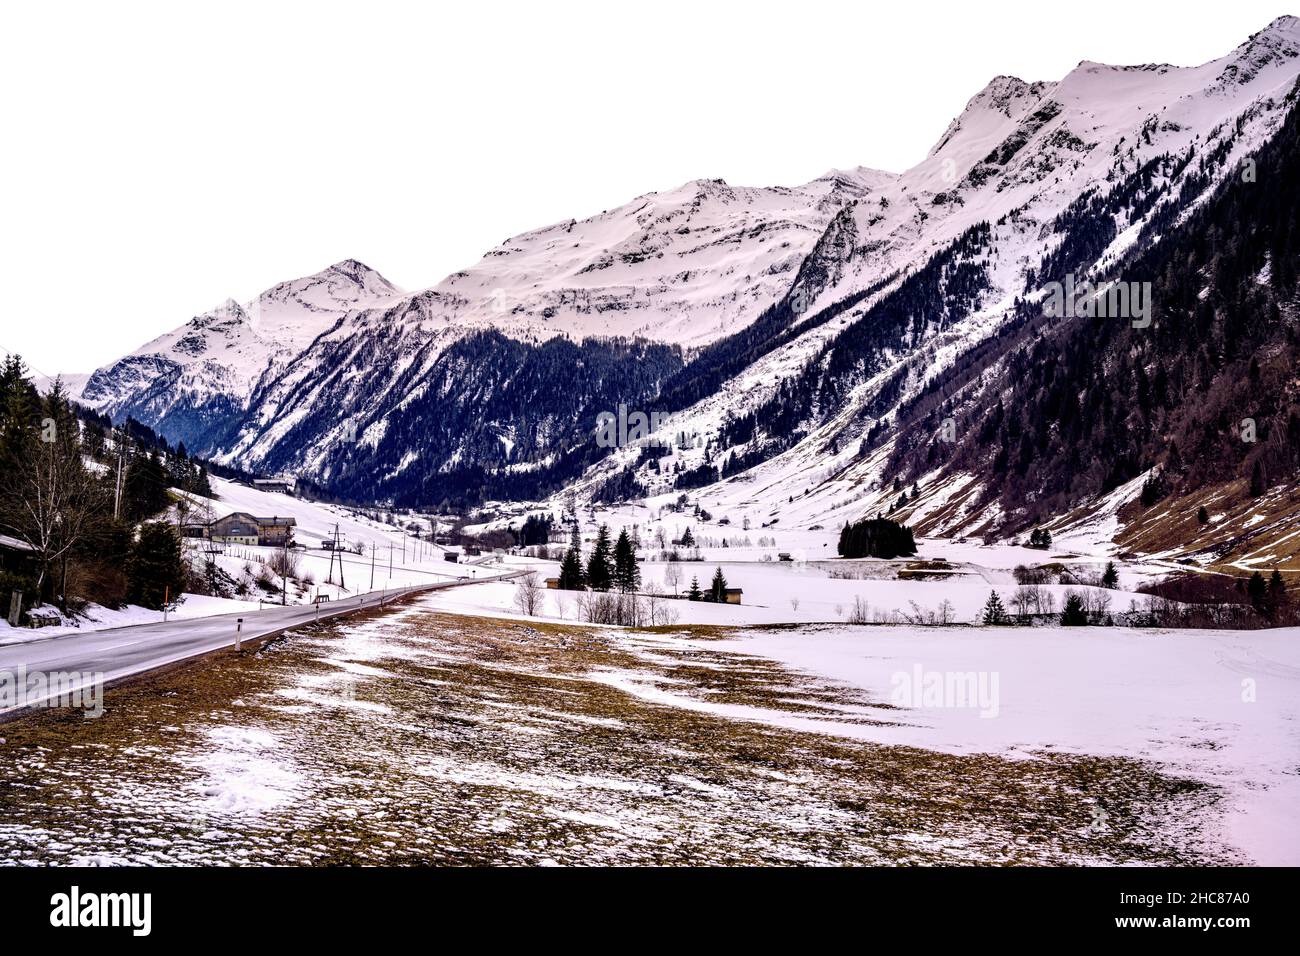 Mountain valley, ski center Rauris, Austria Stock Photo